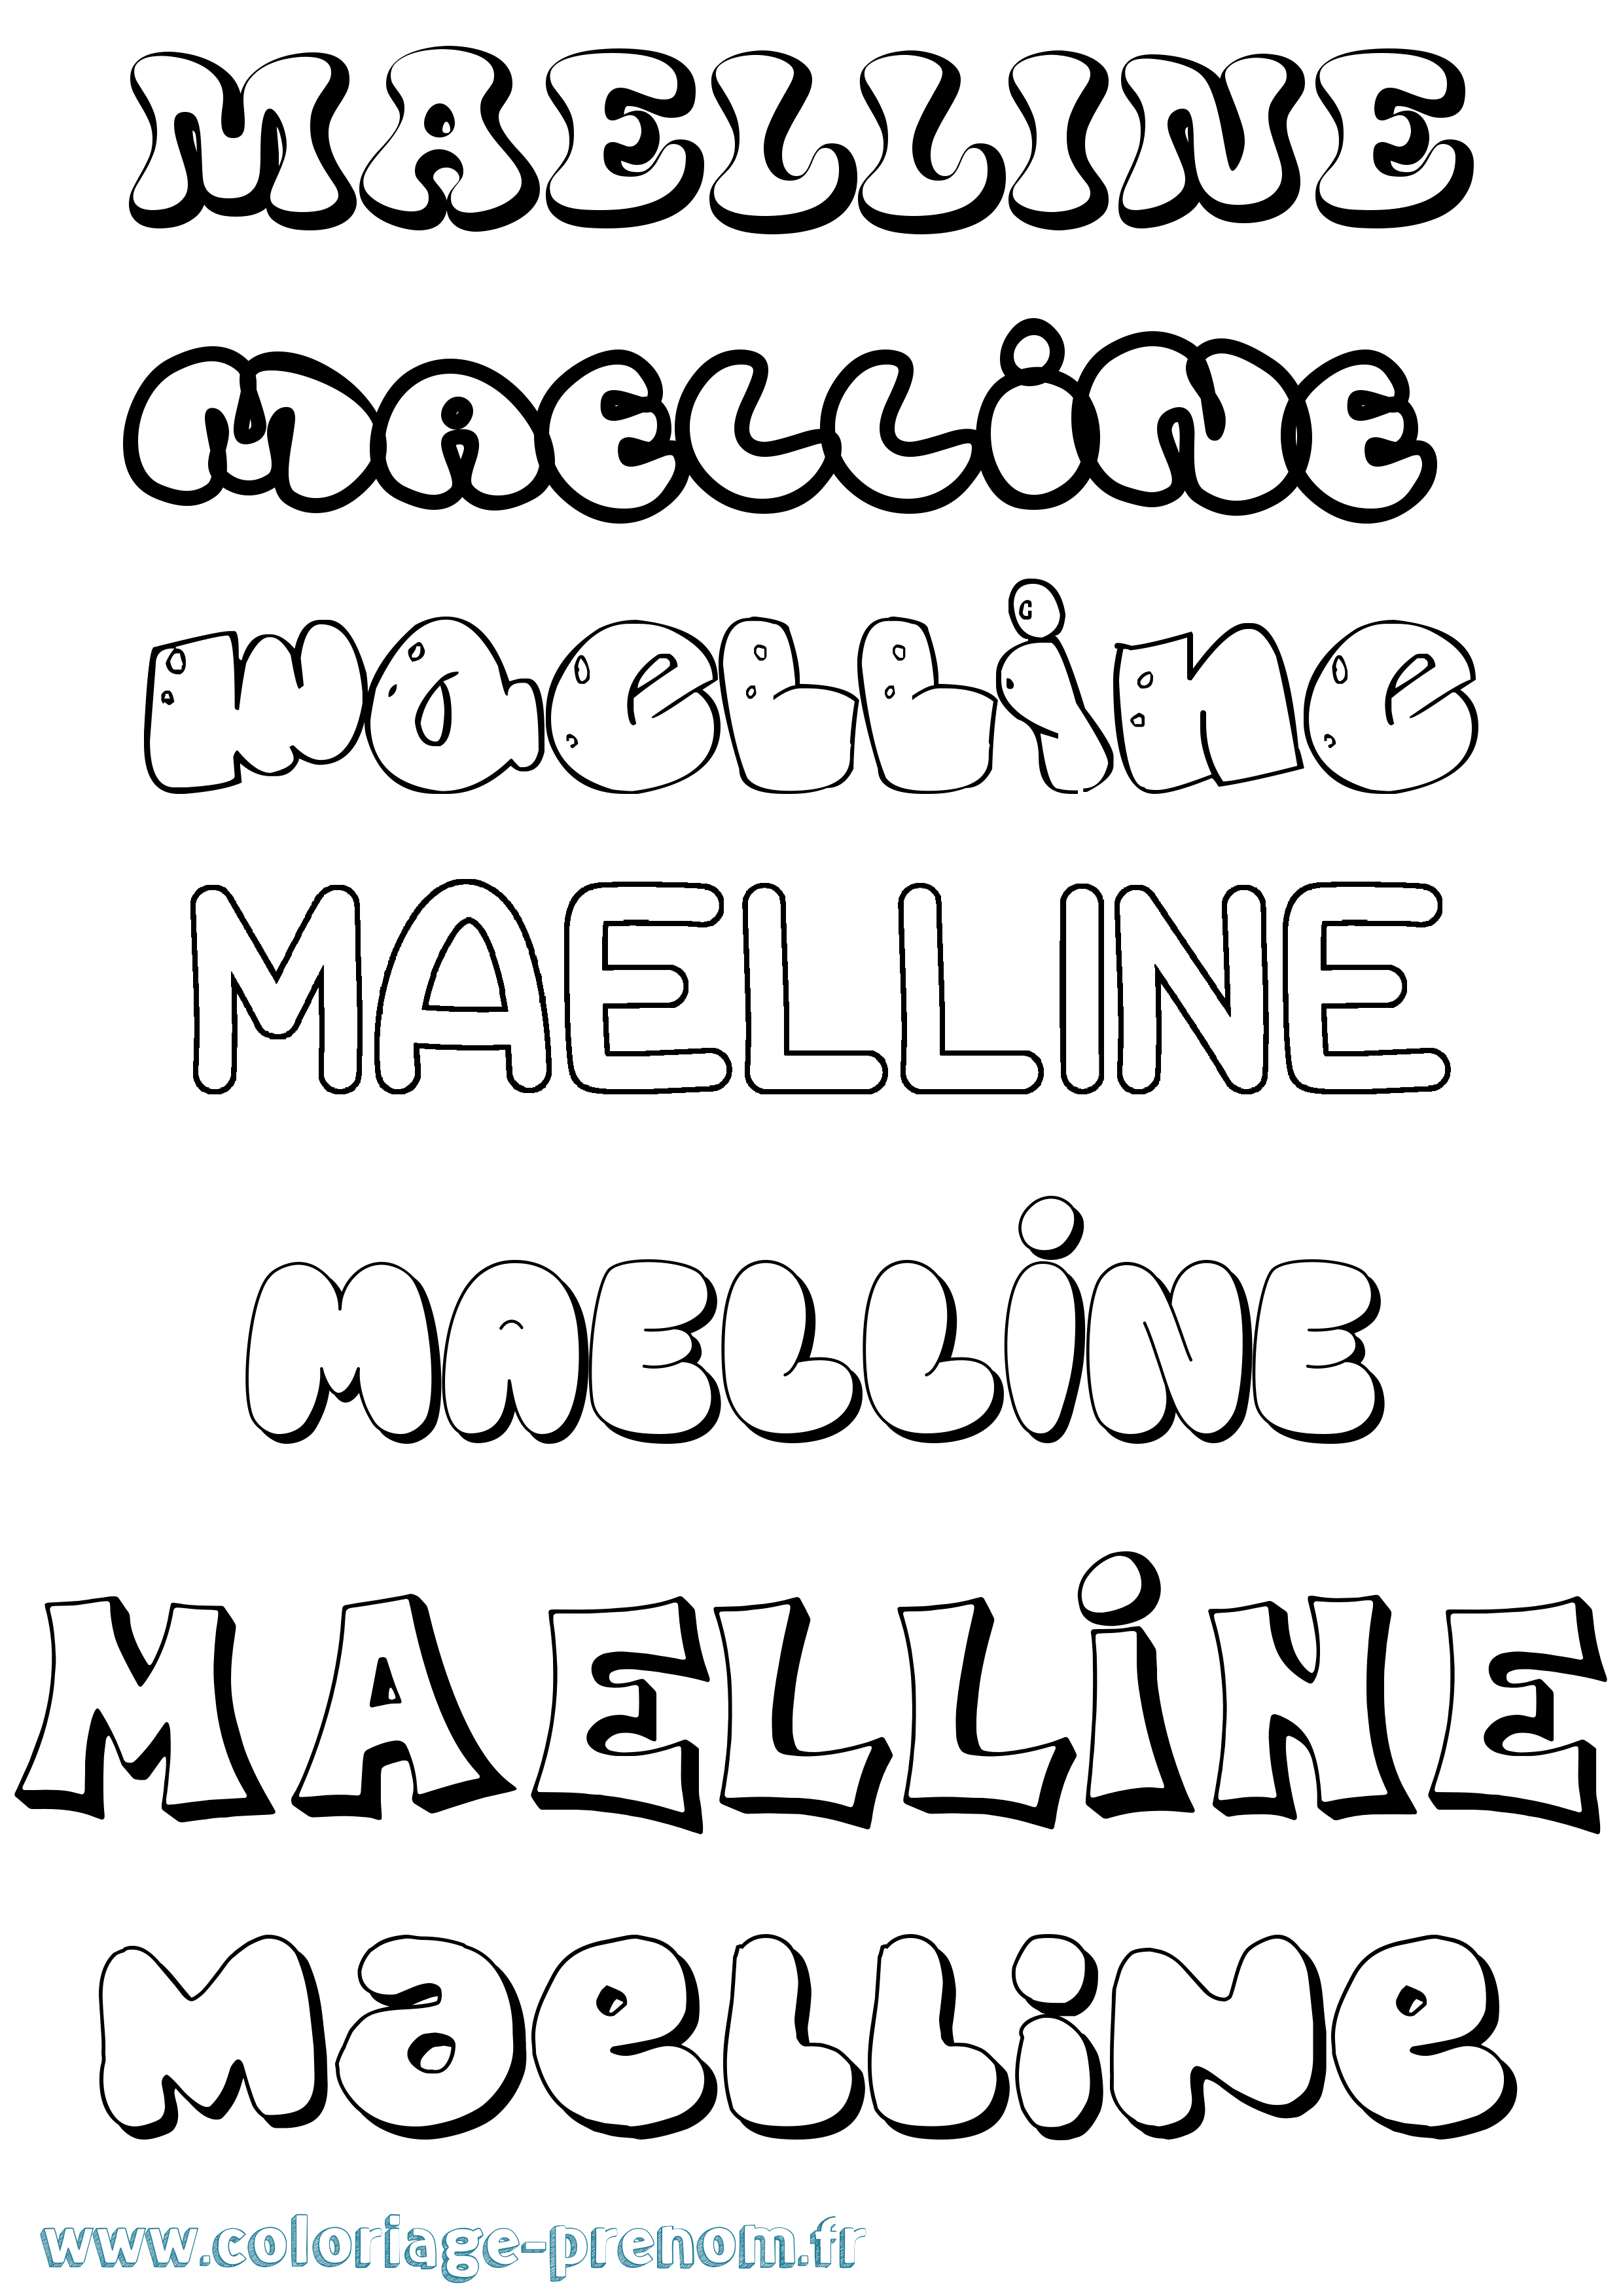 Coloriage prénom Maelline Bubble